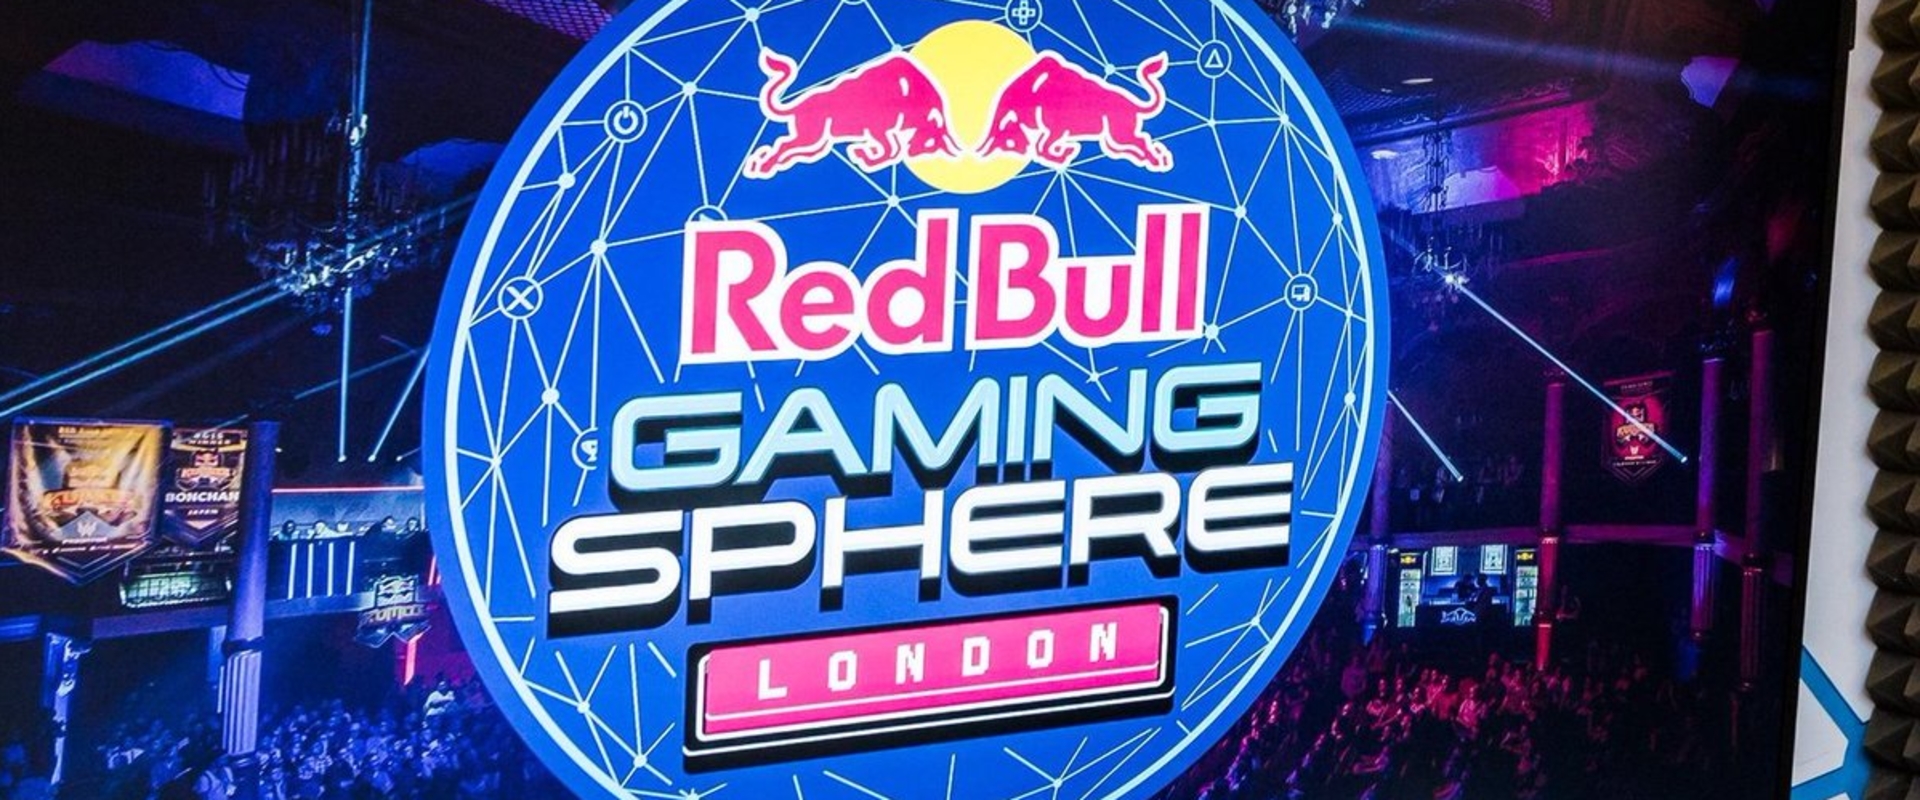 Esportközpontot alapít a Red Bull Londonban!